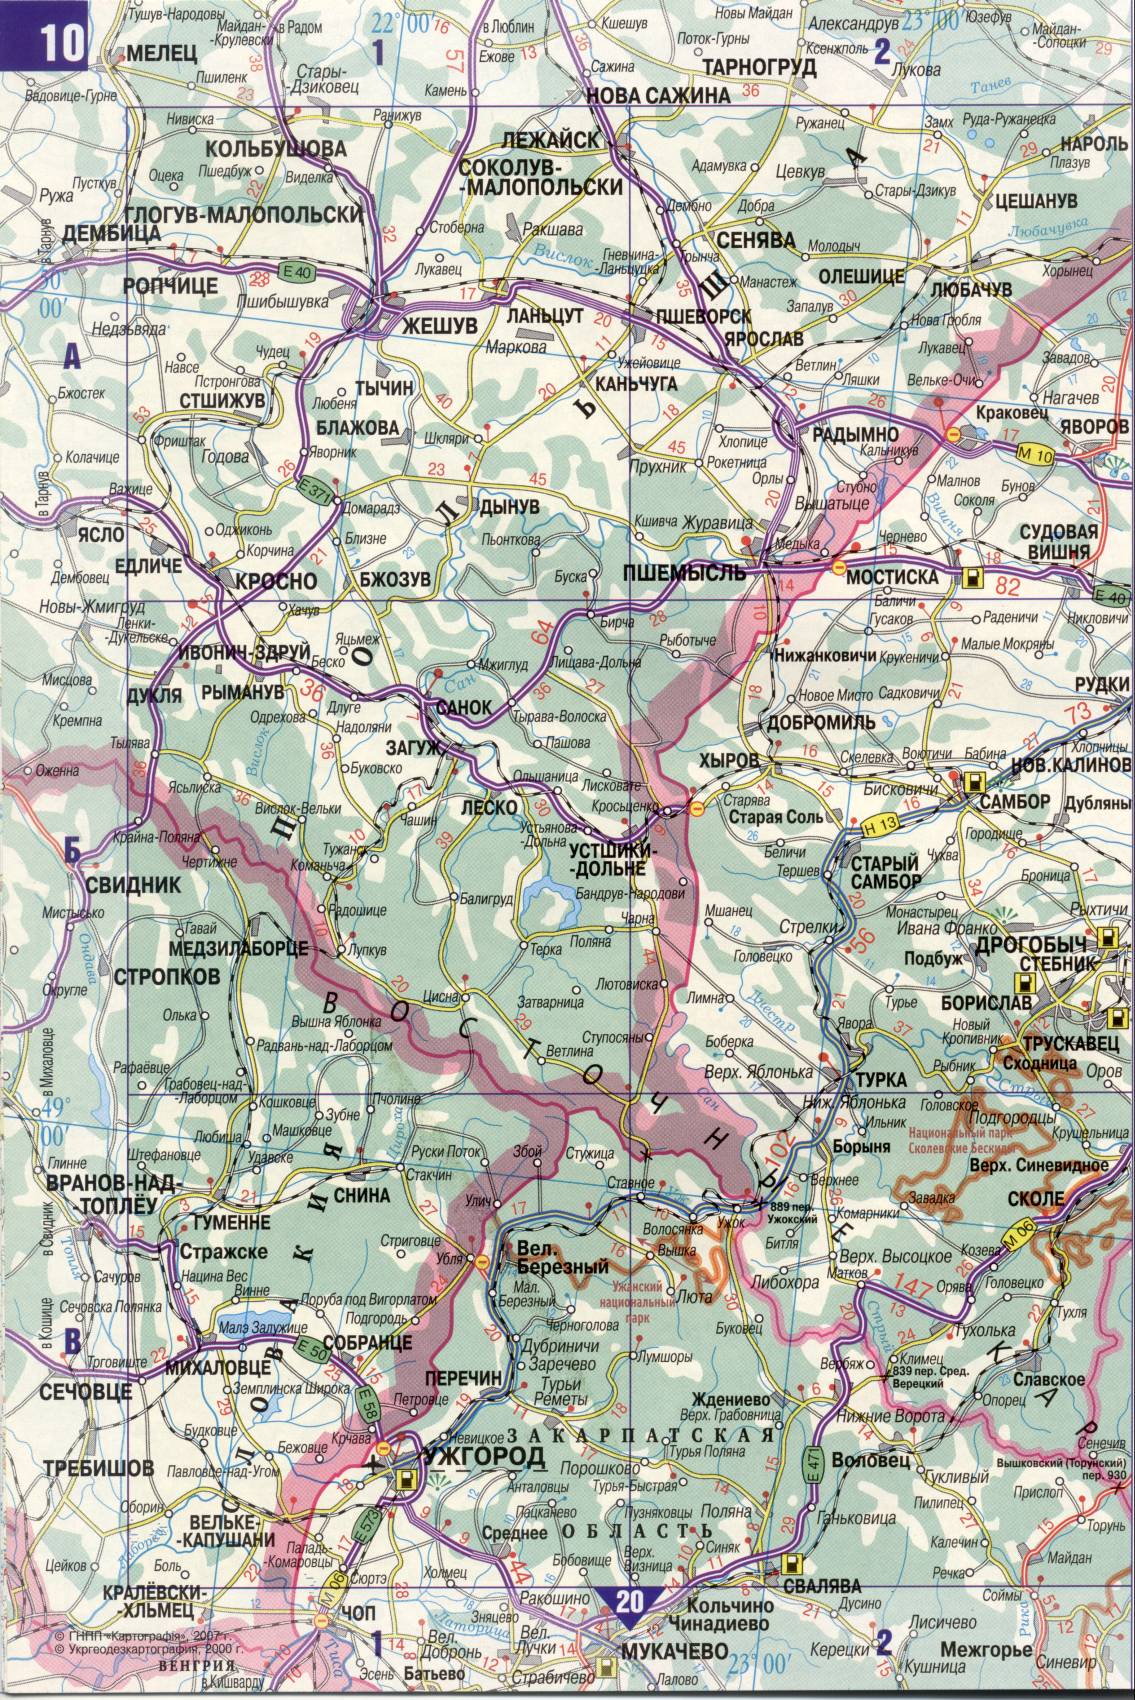 Карта Украины. Подробная карта дорог Украина из автомобильног атласа. скачать бесплатно, A1